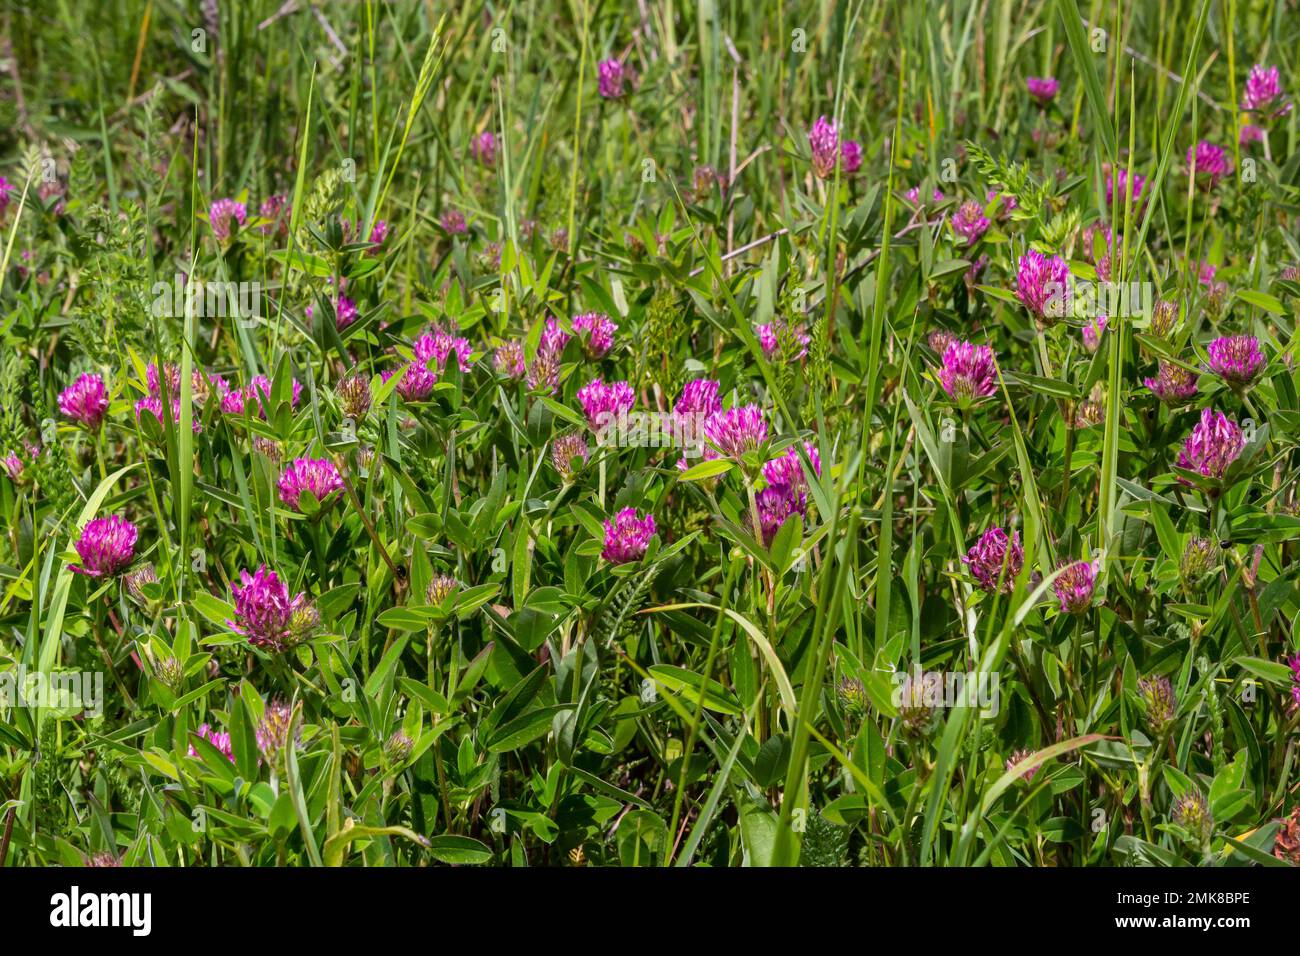 Dunkelrosa Blume. Rotklee oder Trifolium pratense-Blüte, Nahaufnahme. Lila Wiesen-Trefoil-Blüte mit abwechselnden, drei Flügelblättern. Wilde C. Stockfoto